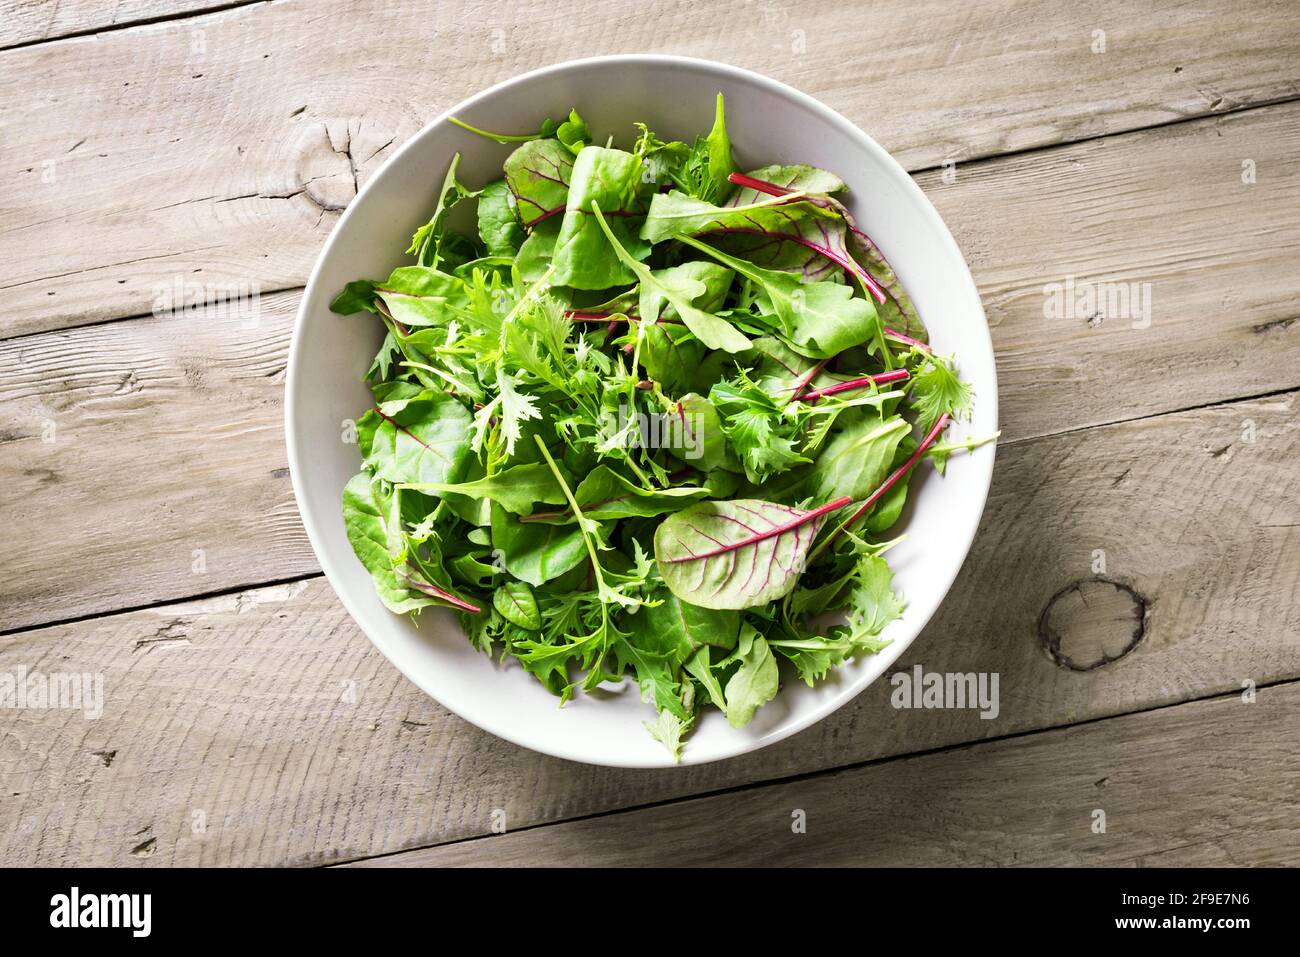 Insalata verde sana, foglie biologiche fresche mescolano insalata con rucola, bietola svizzera e lattuga, sfondo in legno, vista dall'alto, spazio copia. Foto Stock